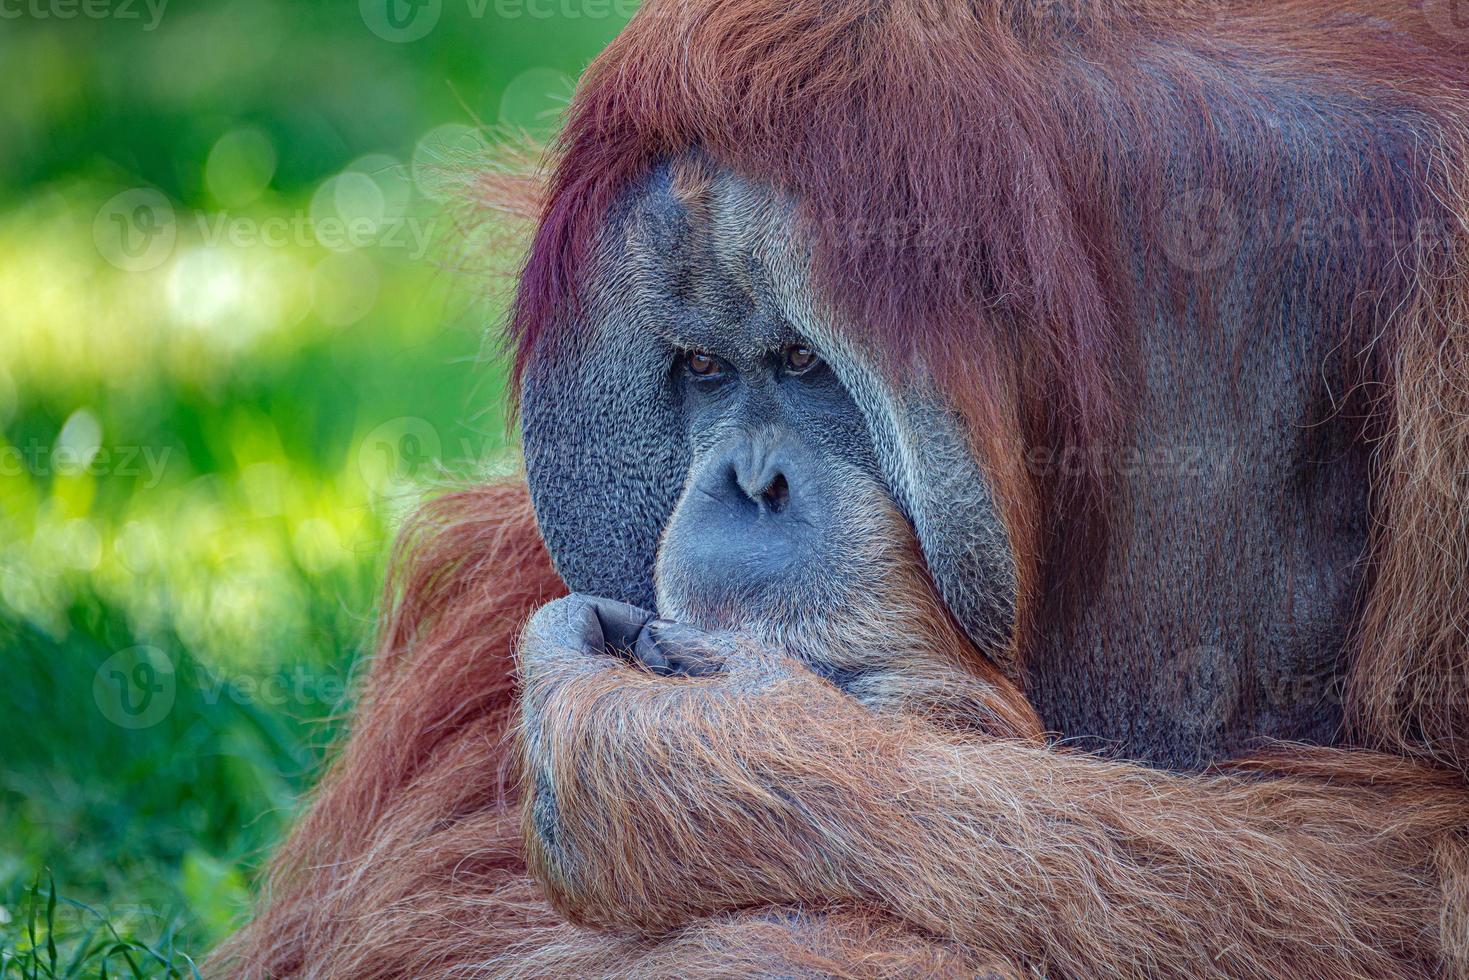 retrato de um orangotango asiático idoso, velho macho alfa poderoso e grande pensando em algo, triste ou deprimido, detalhes, close up. foto